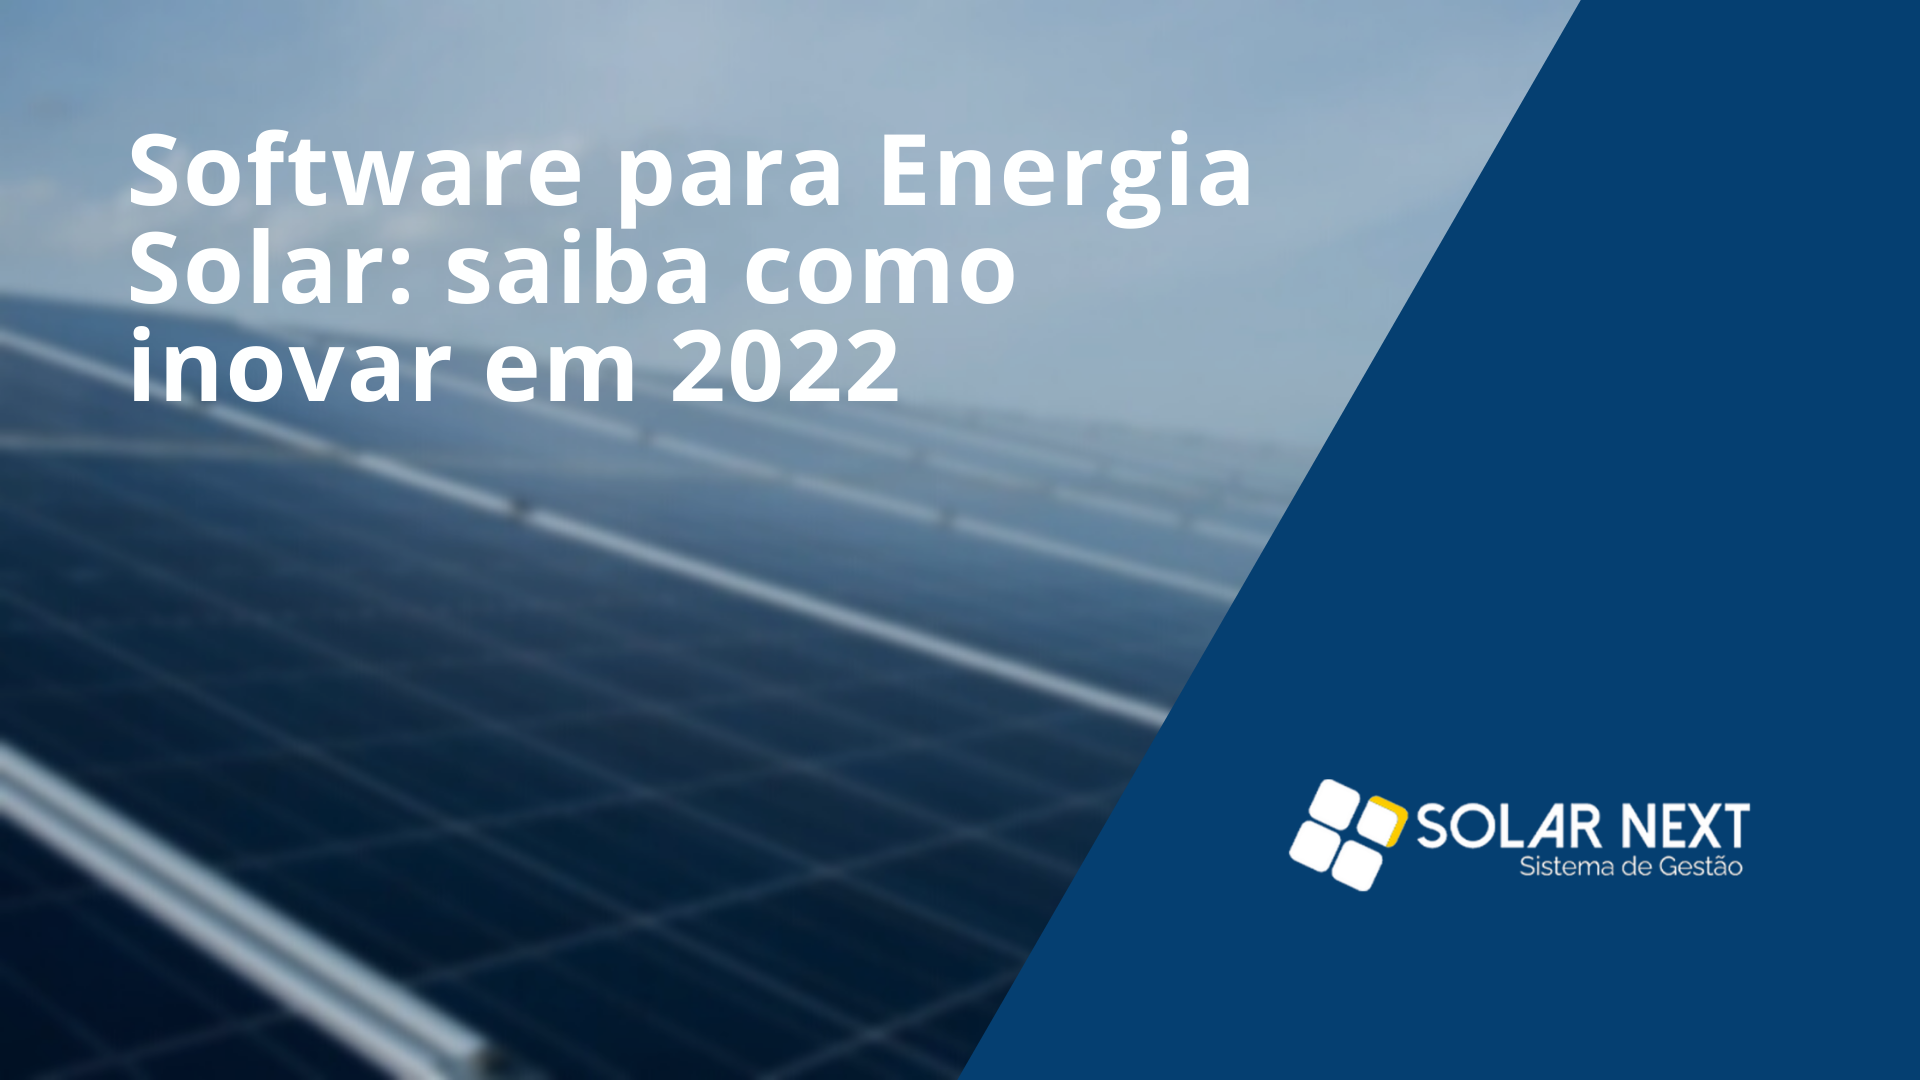 Software para Energia Solar: saiba como inovar em 2022